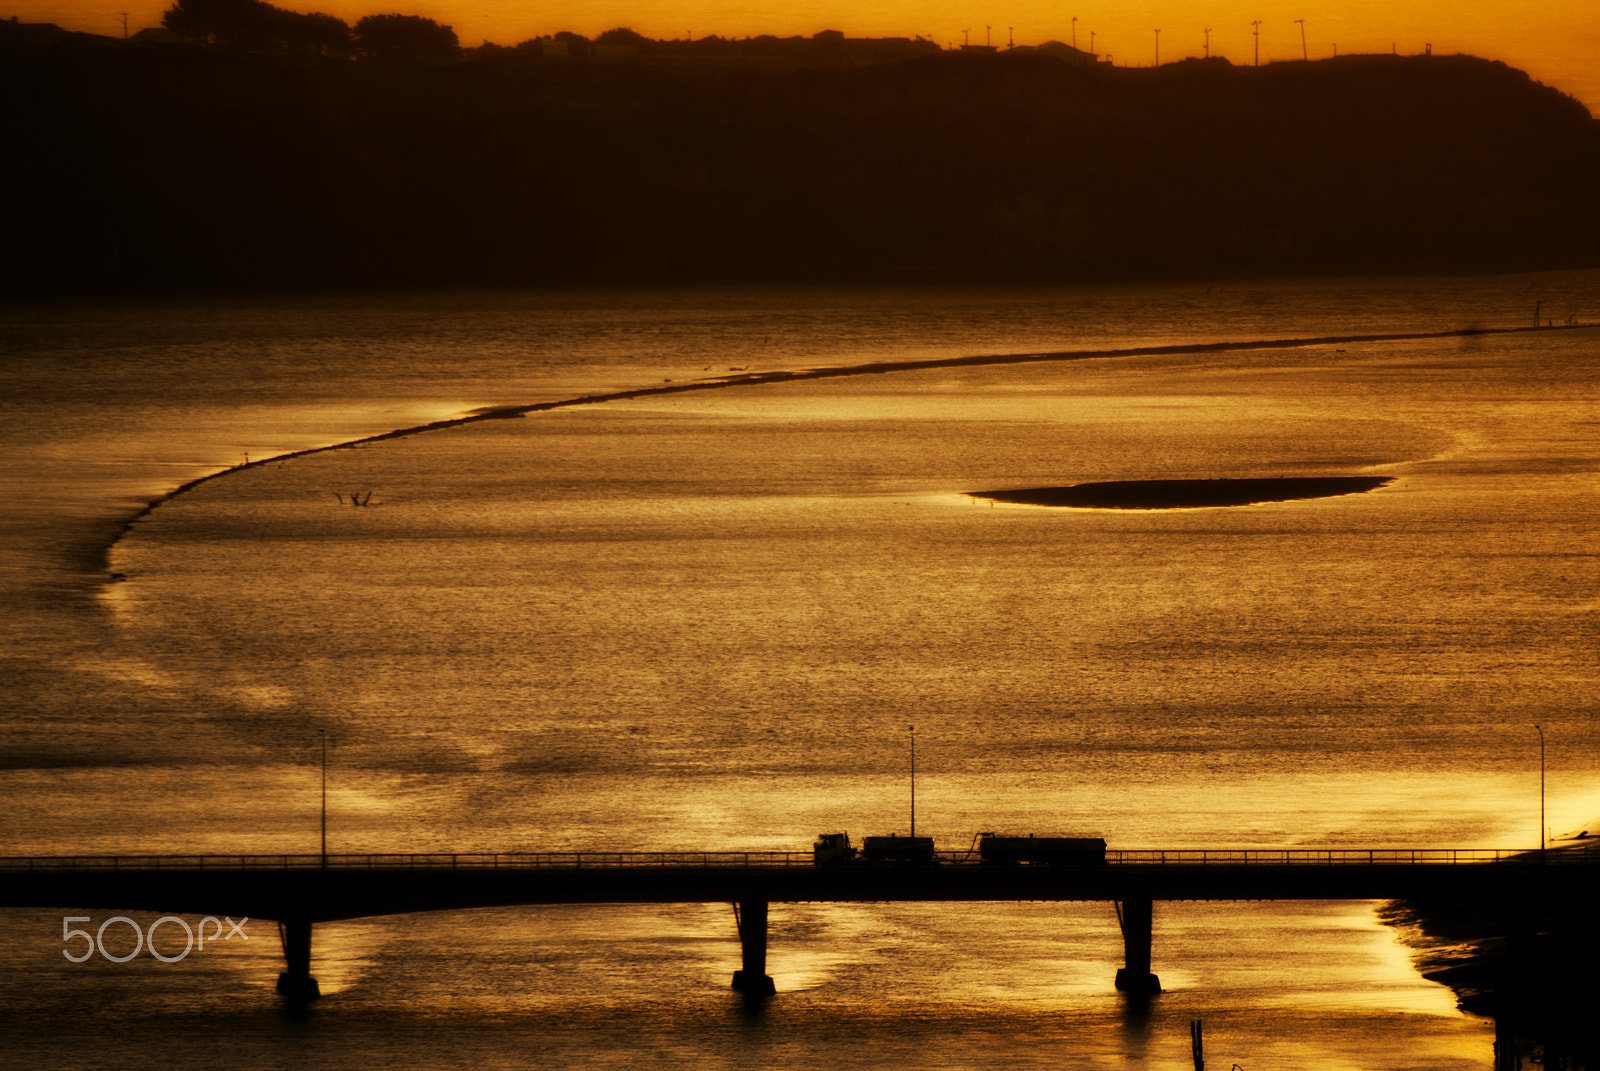 Pentax K10D sample photo. Motorway bridge sunset photography